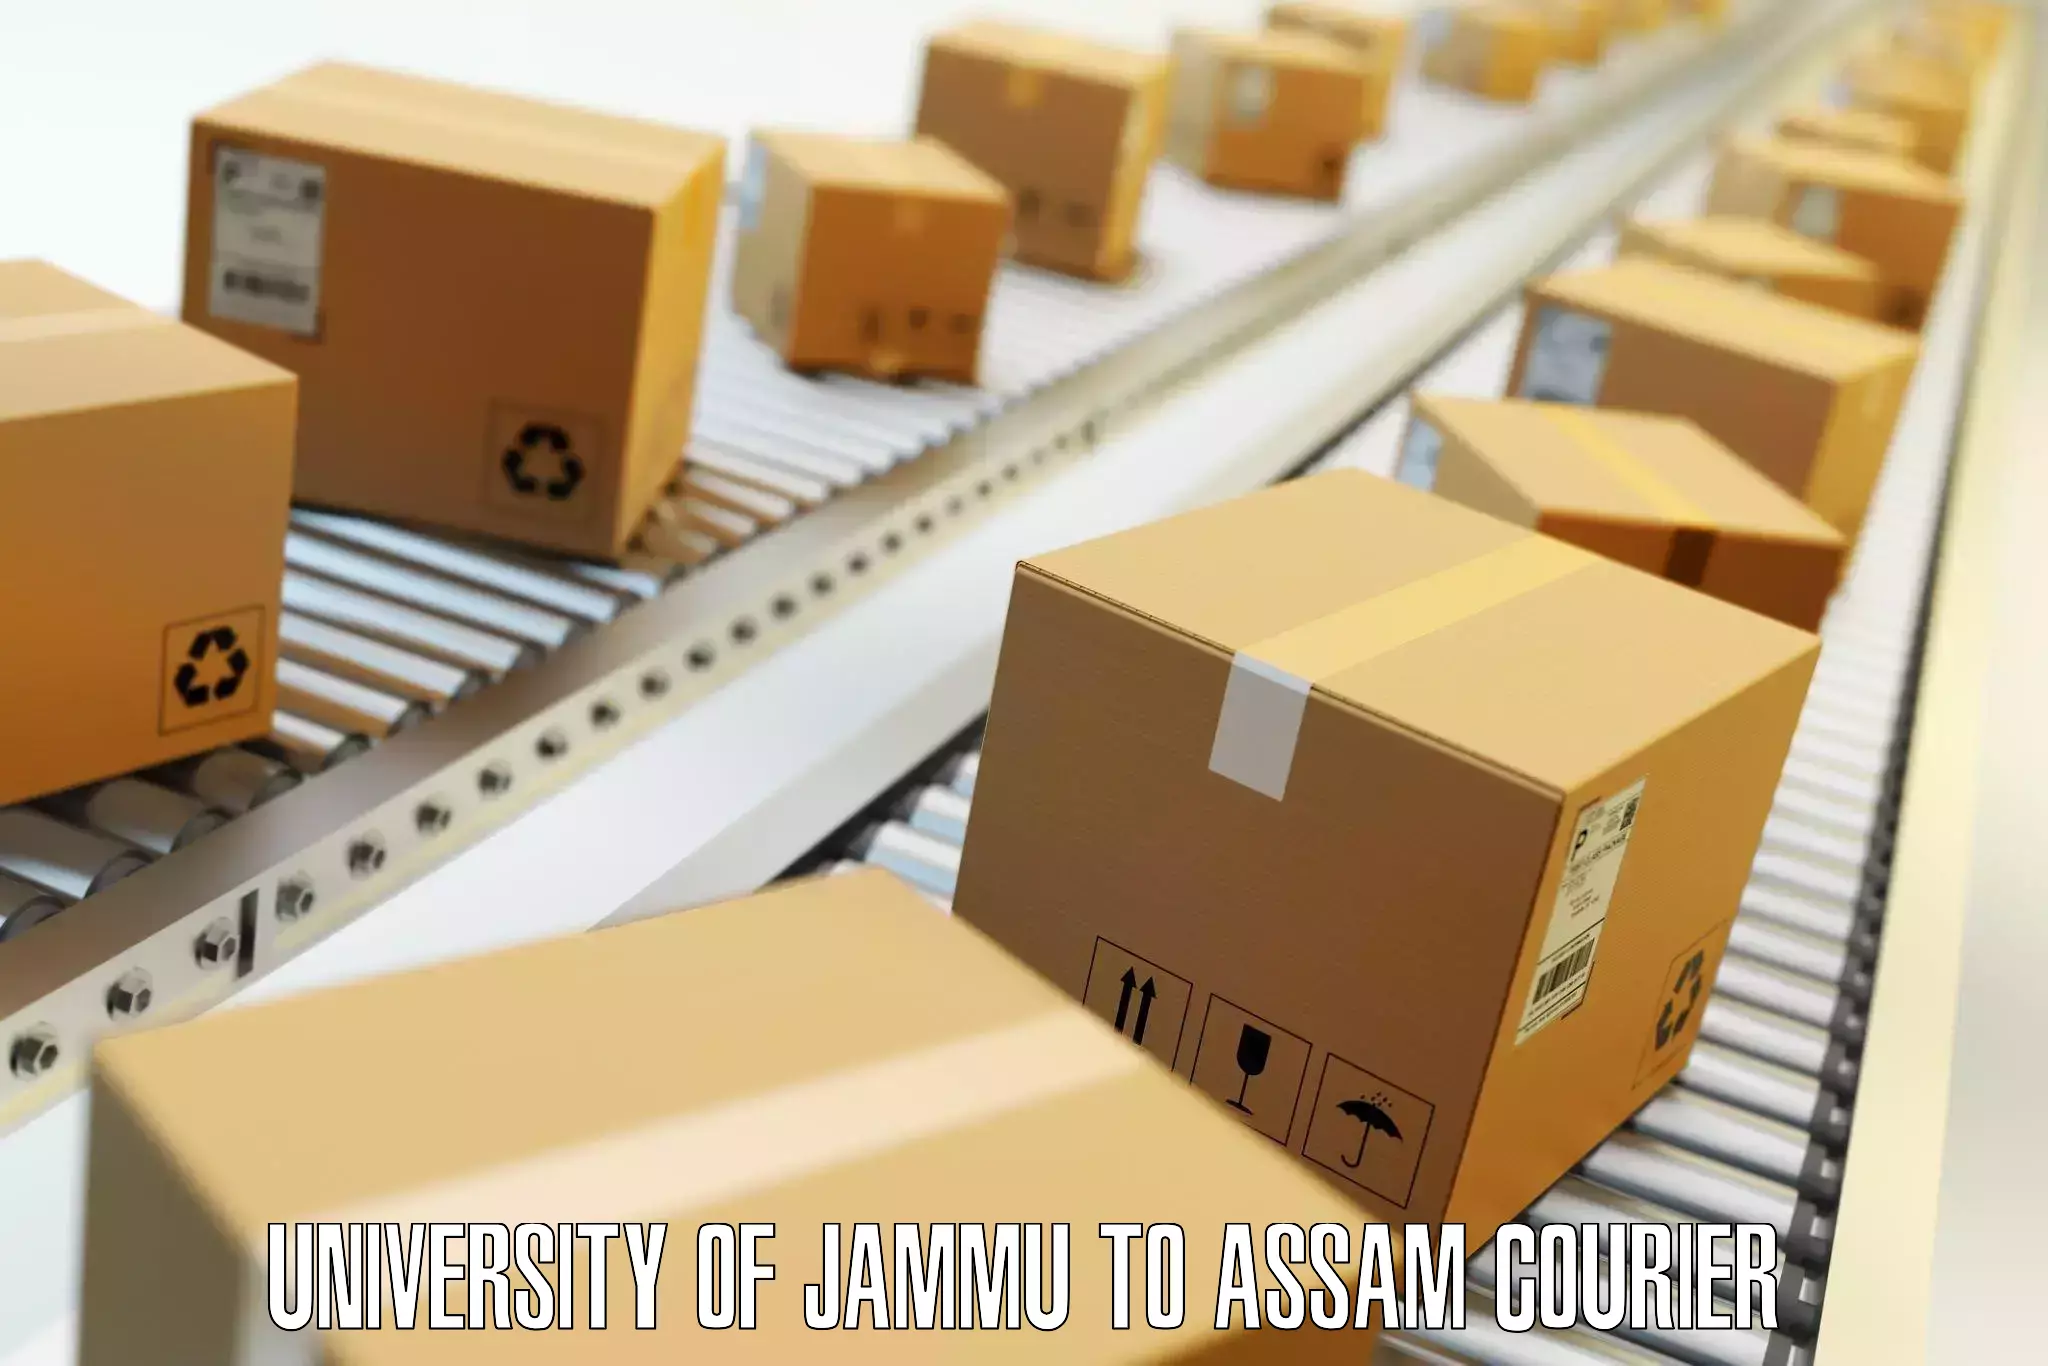 Customized luggage delivery University of Jammu to IIIT Guwahati